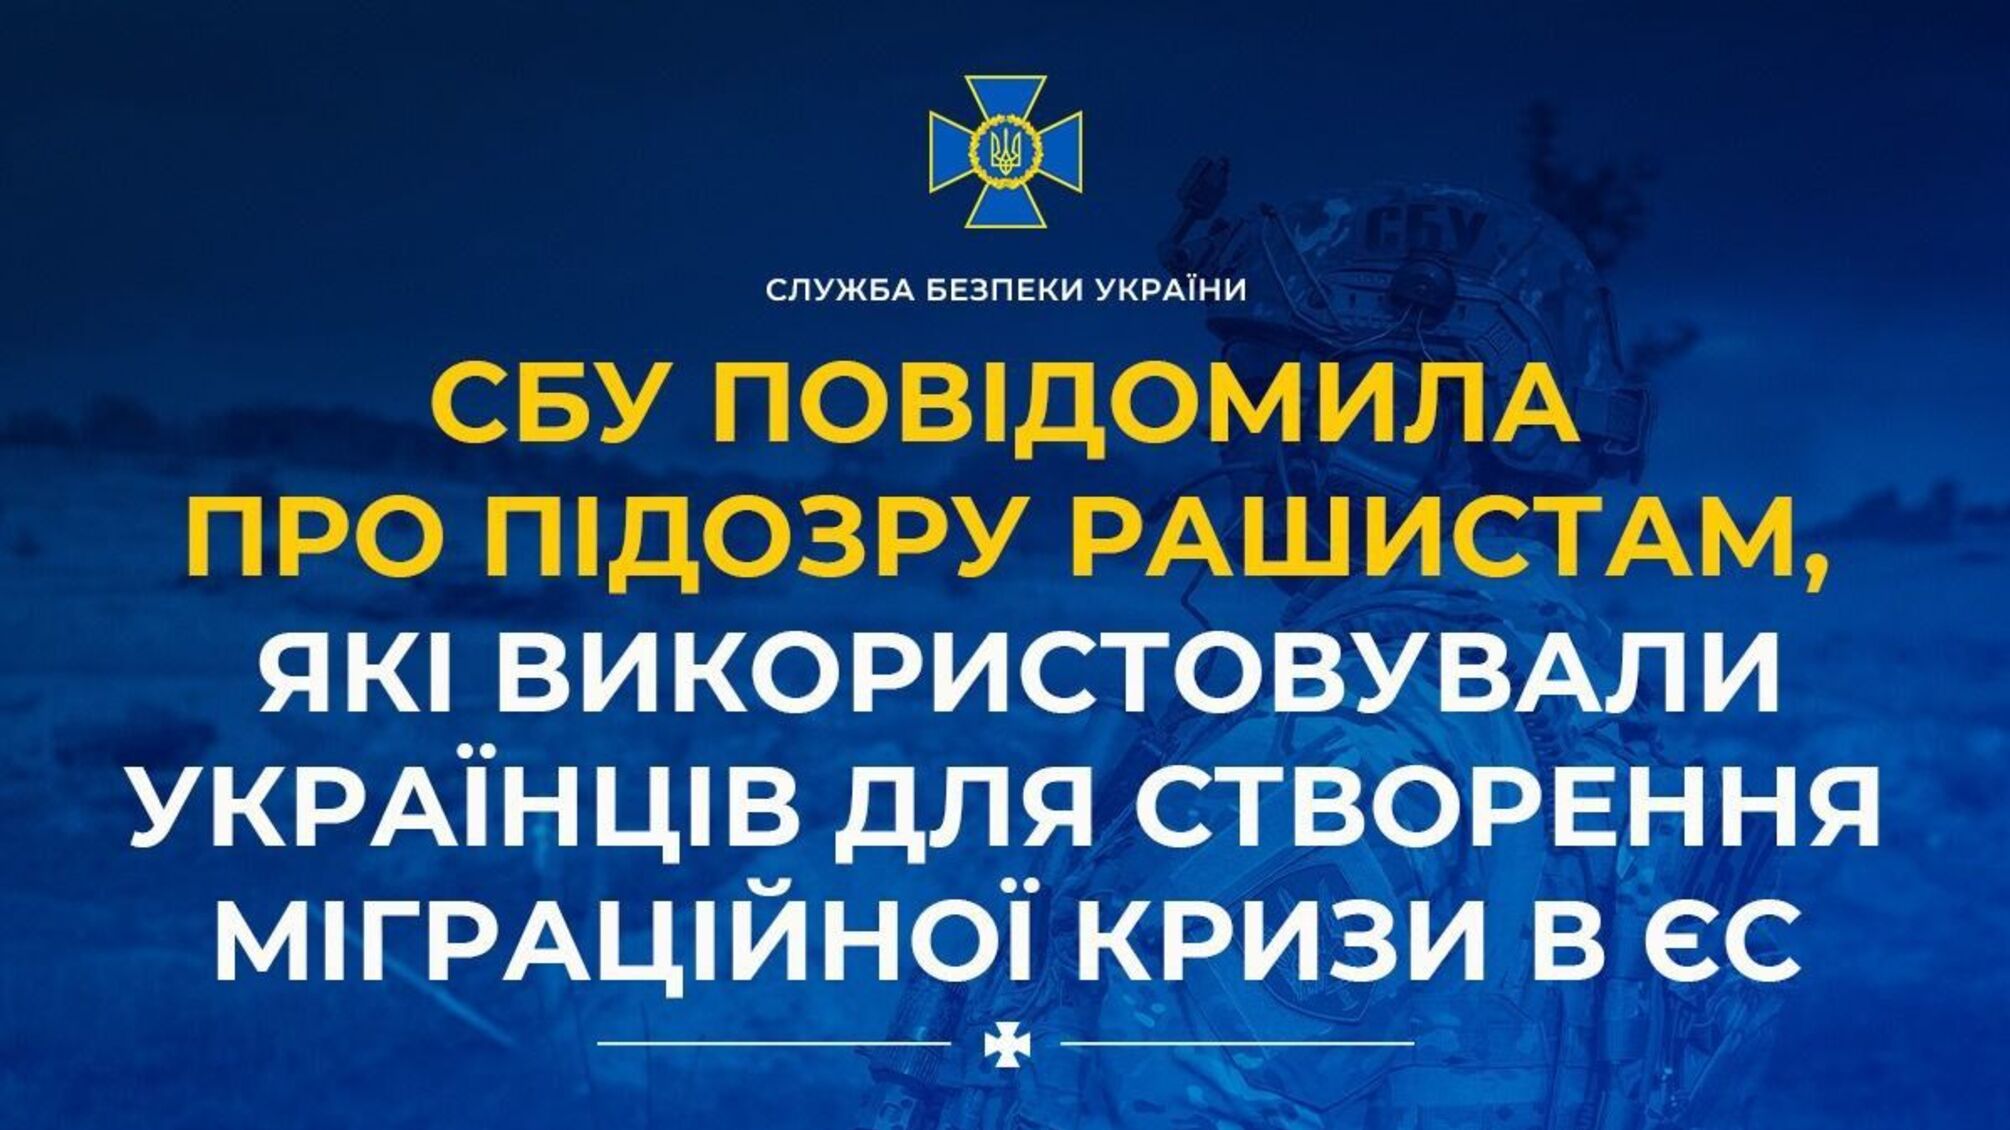 СБУ сообщила о подозрении рашистам, использовавшим украинцев для создания миграционного кризиса в ЕС